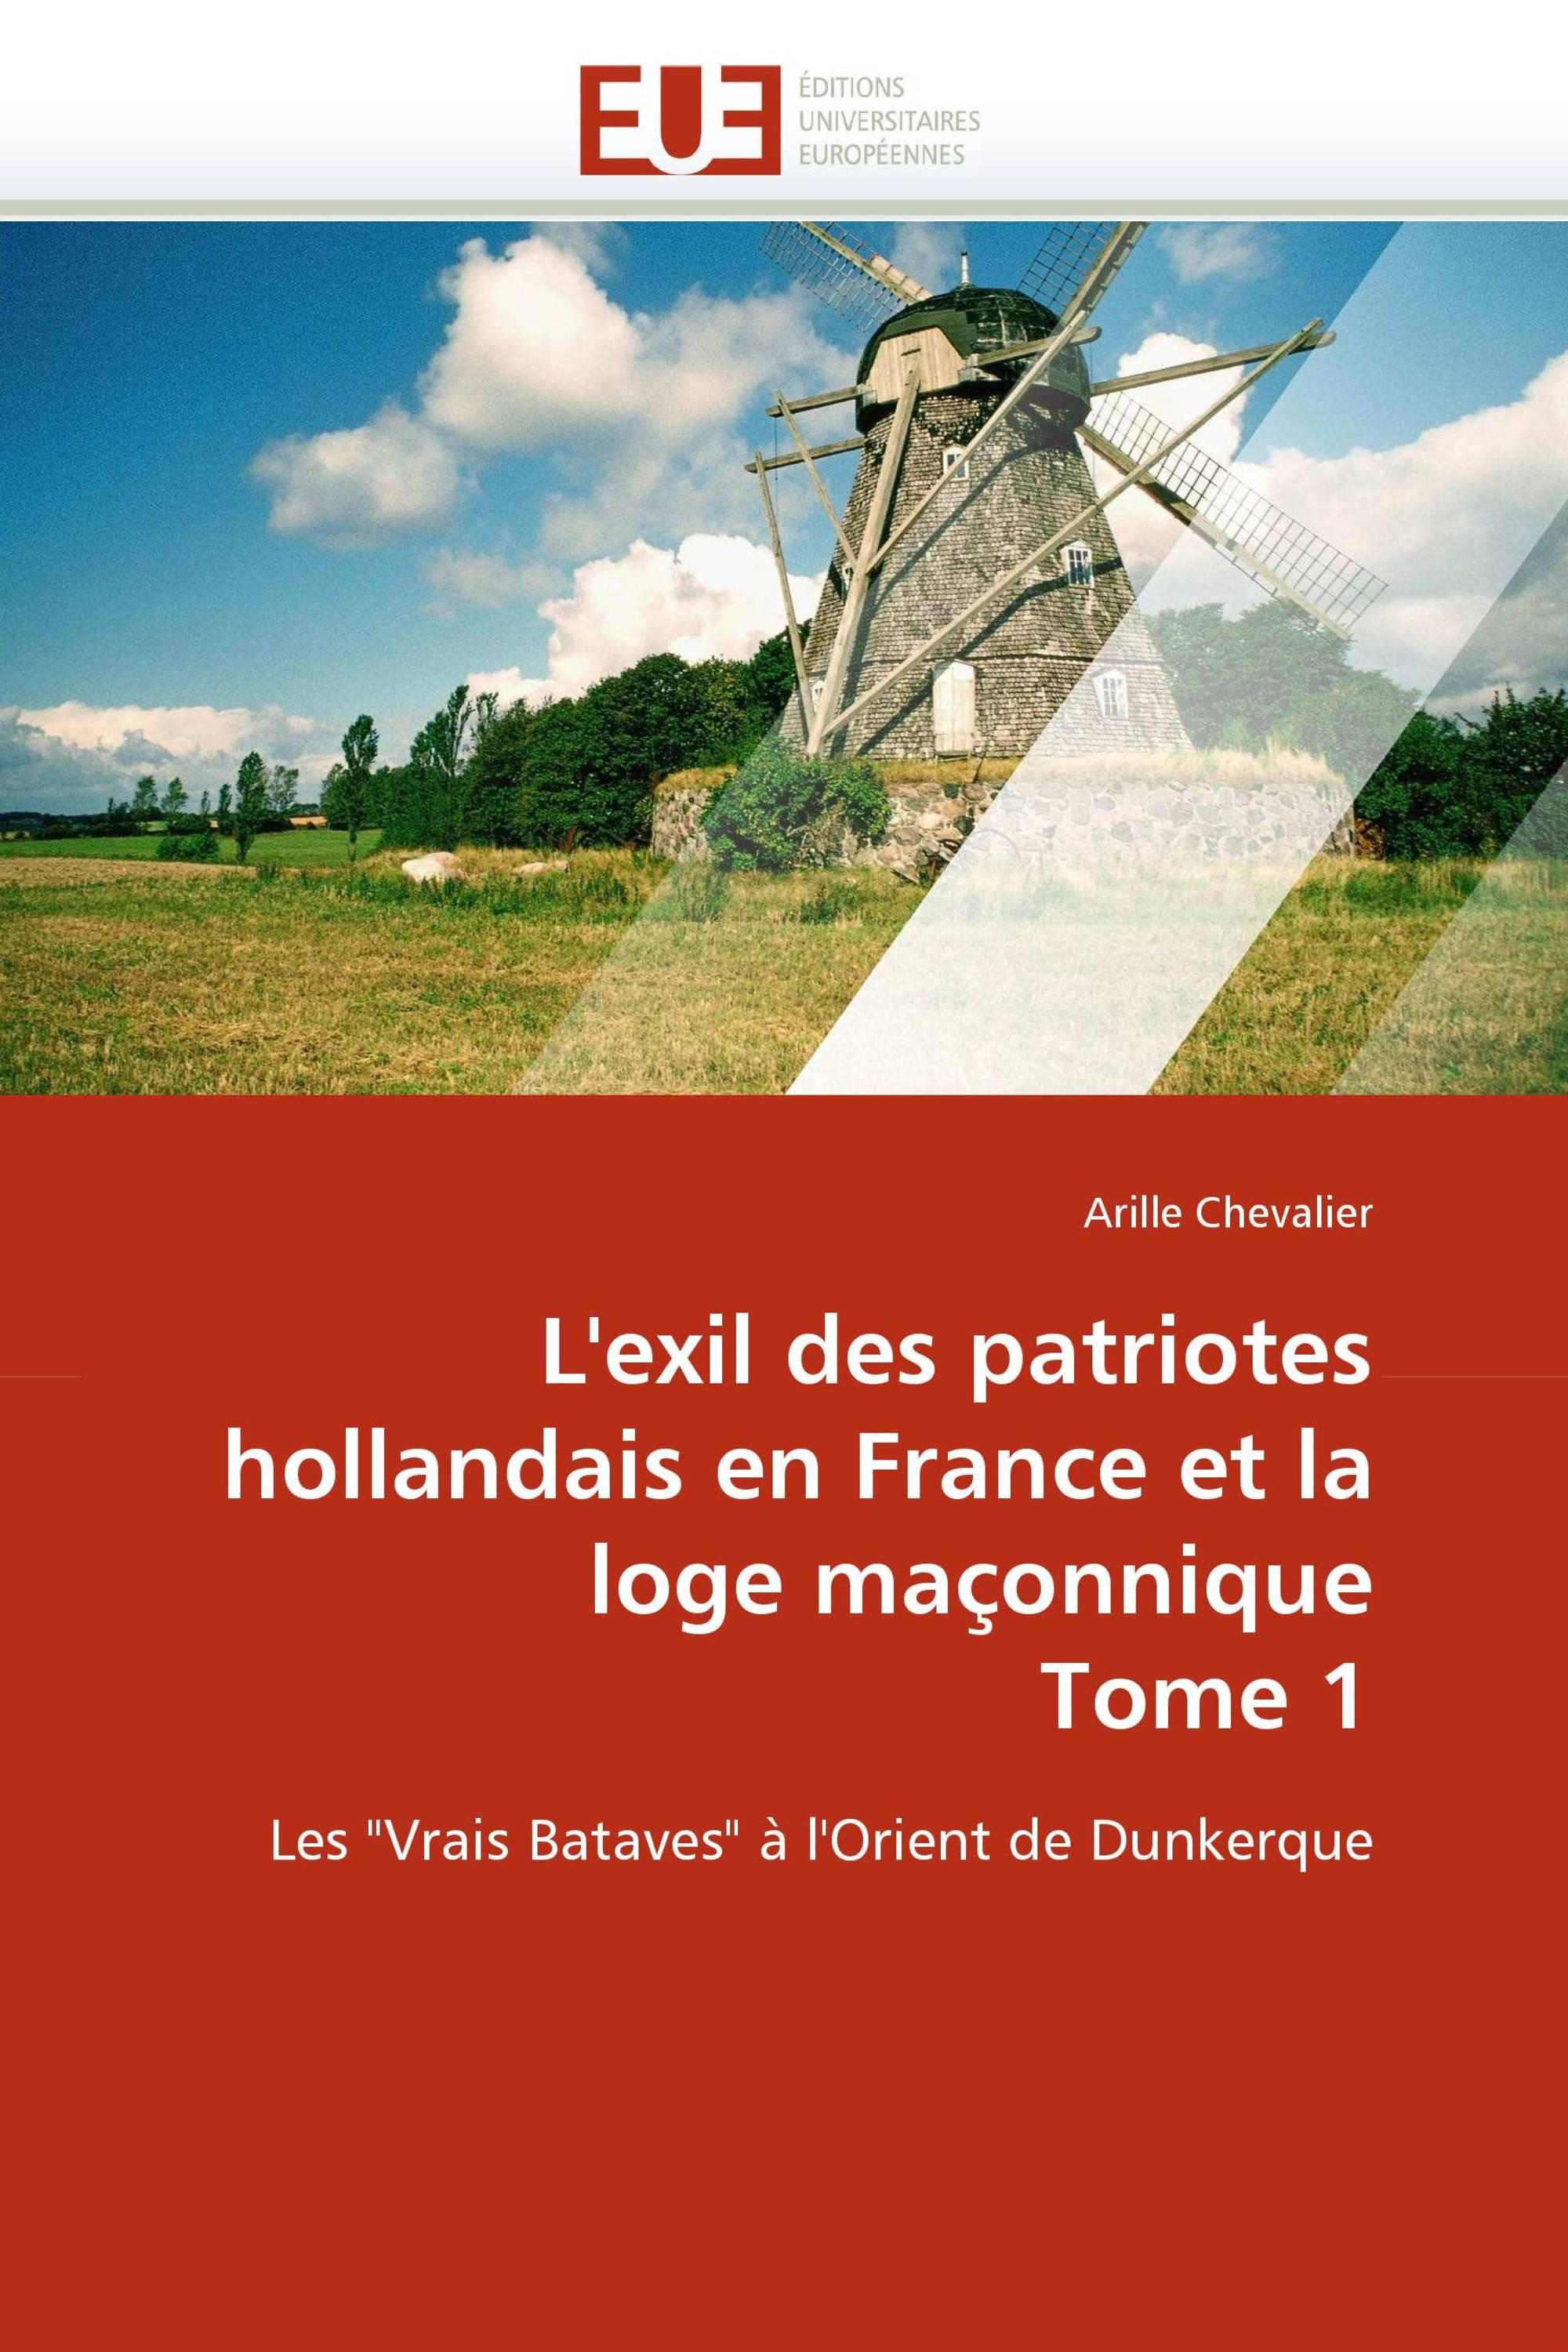 L'exil des patriotes hollandais en France et la loge maçonnique Tome 1